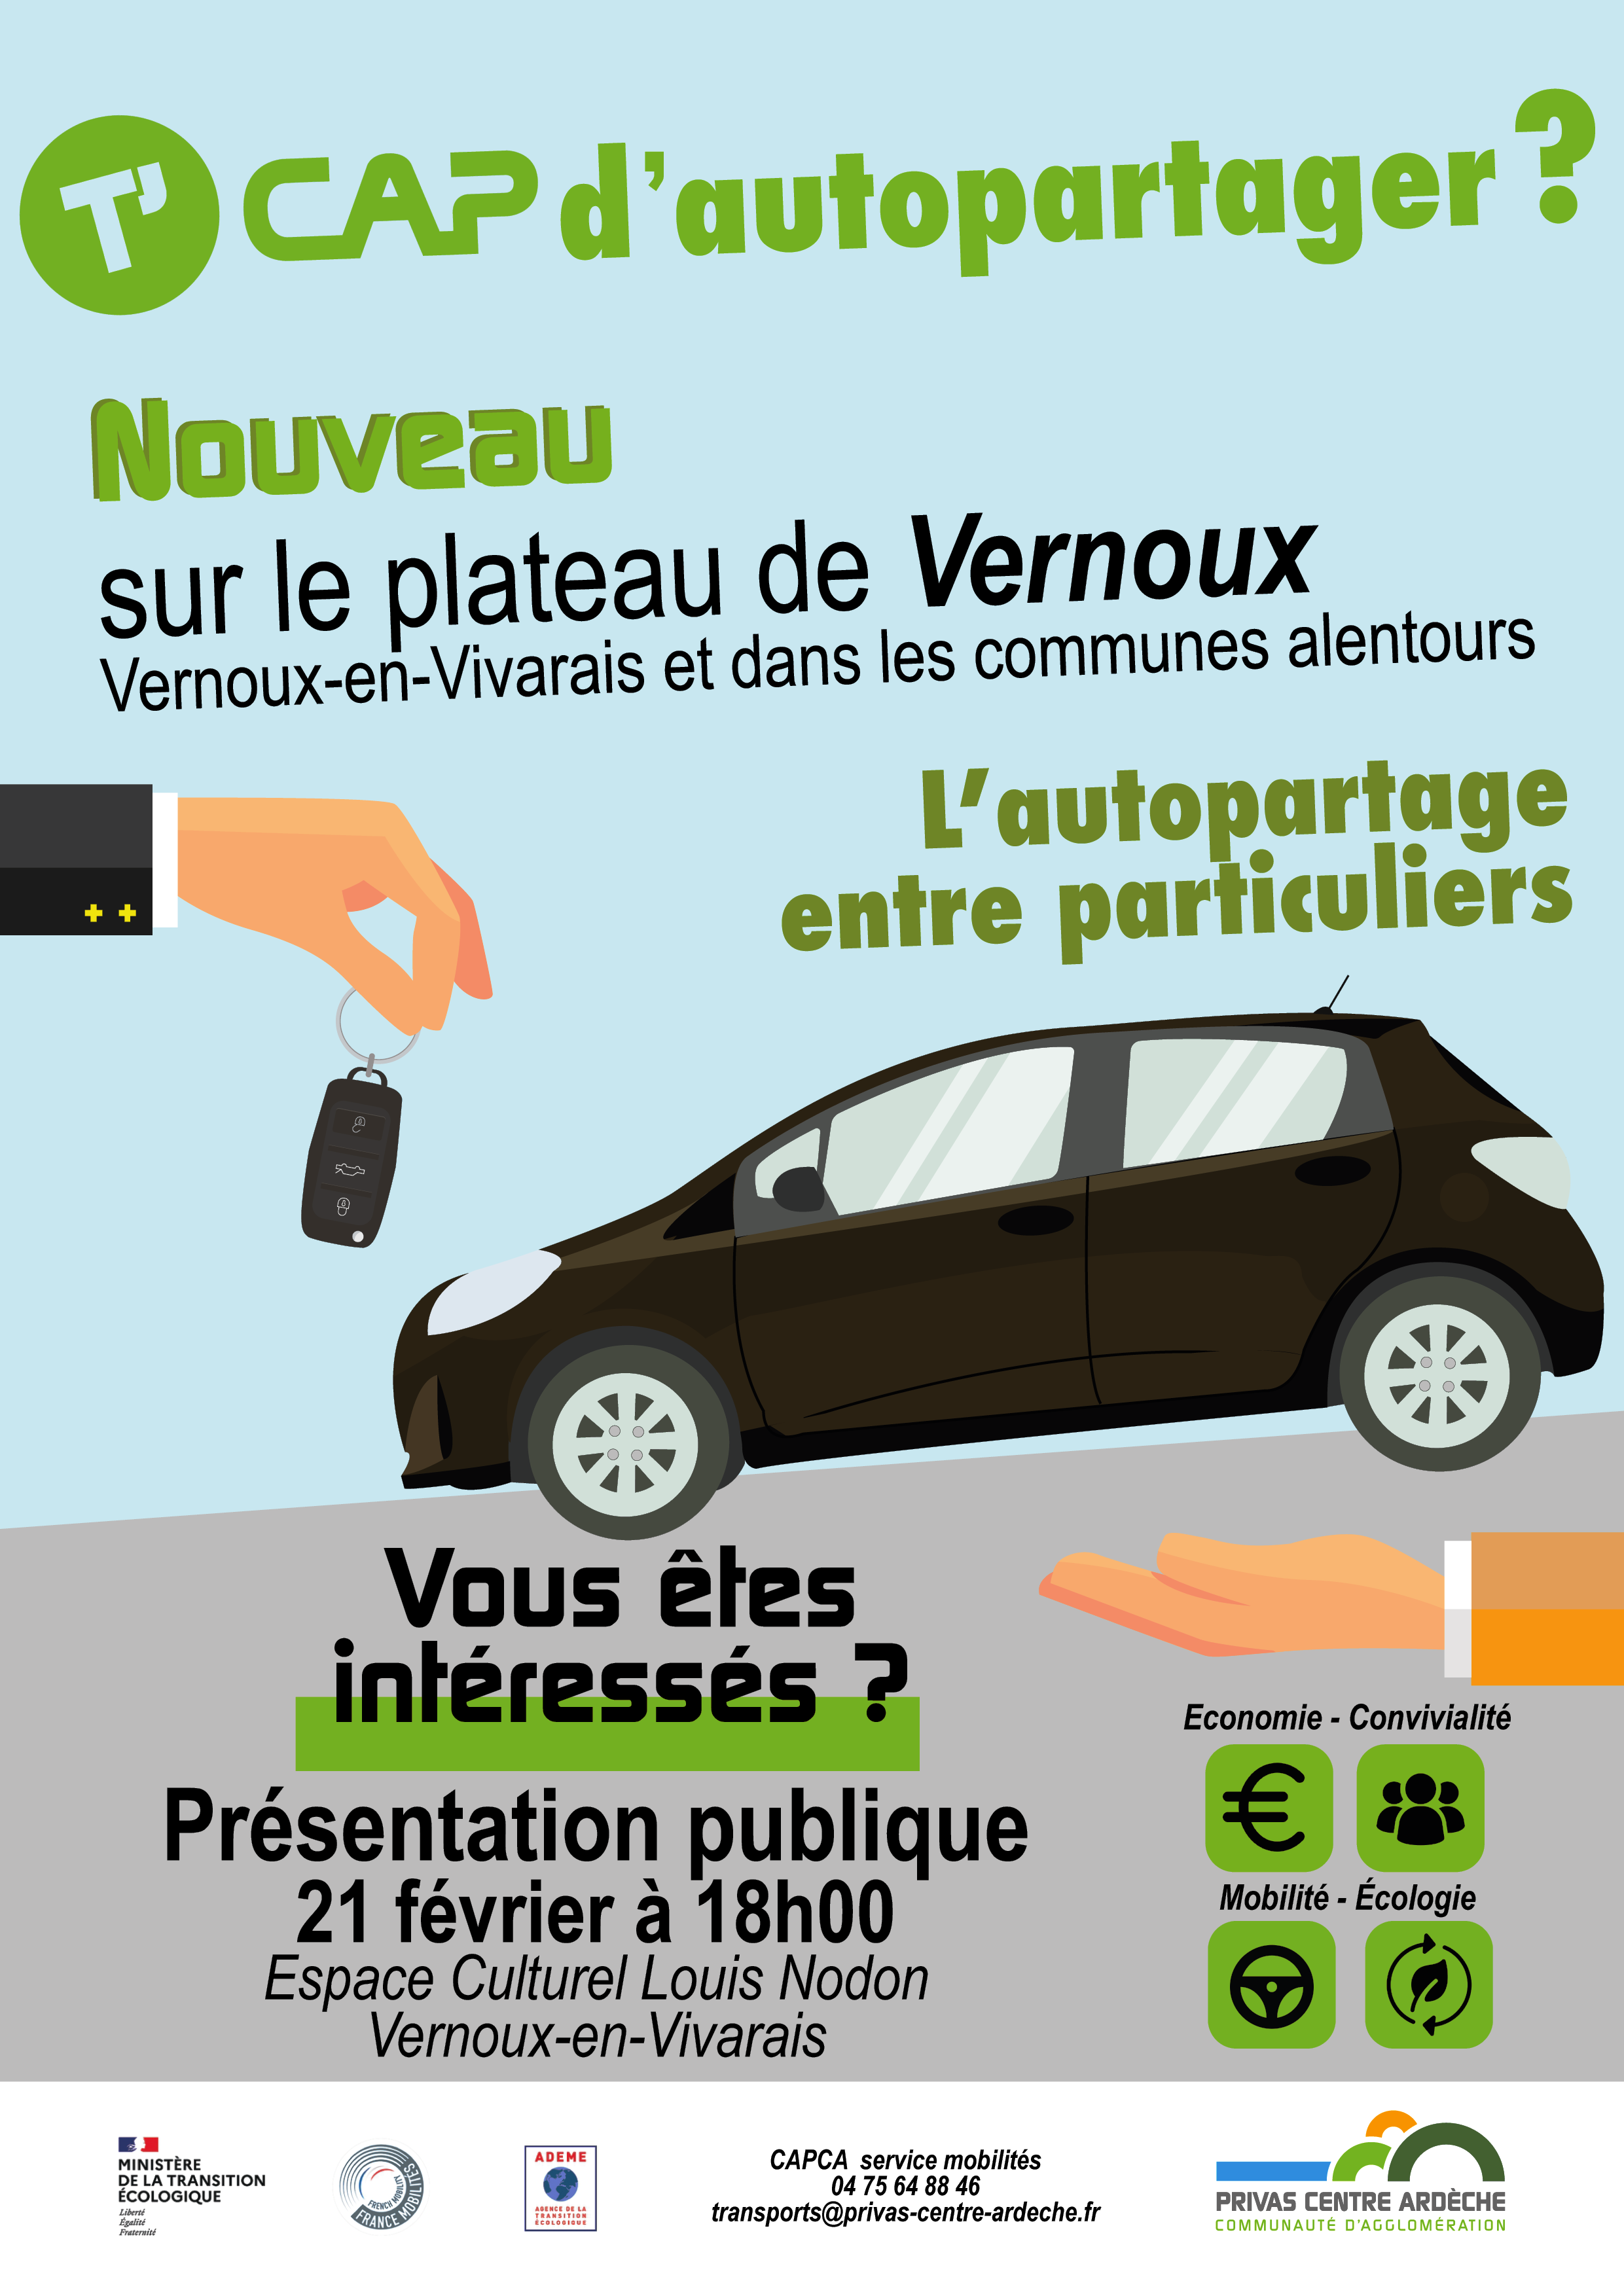 Events…Put it in your diary : Réunion publique de présentation du nouveau service d'autopartage entre particuliers sur le Plateau de Vernoux